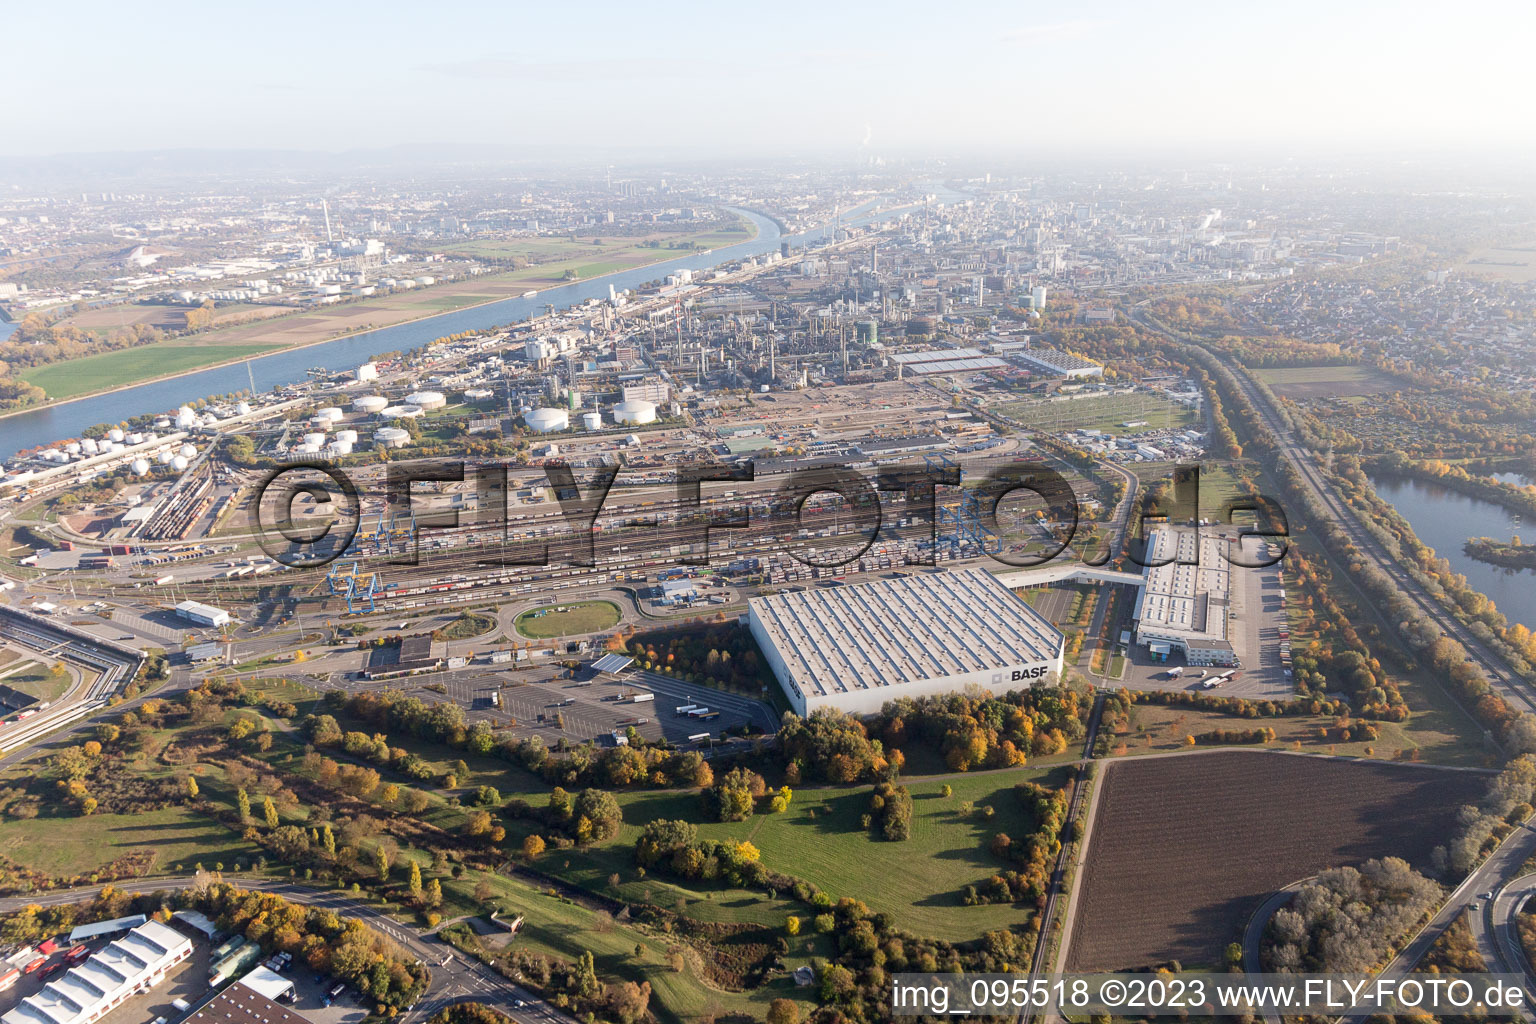 Luftbild von BASF Nord in Ludwigshafen am Rhein im Bundesland Rheinland-Pfalz, Deutschland